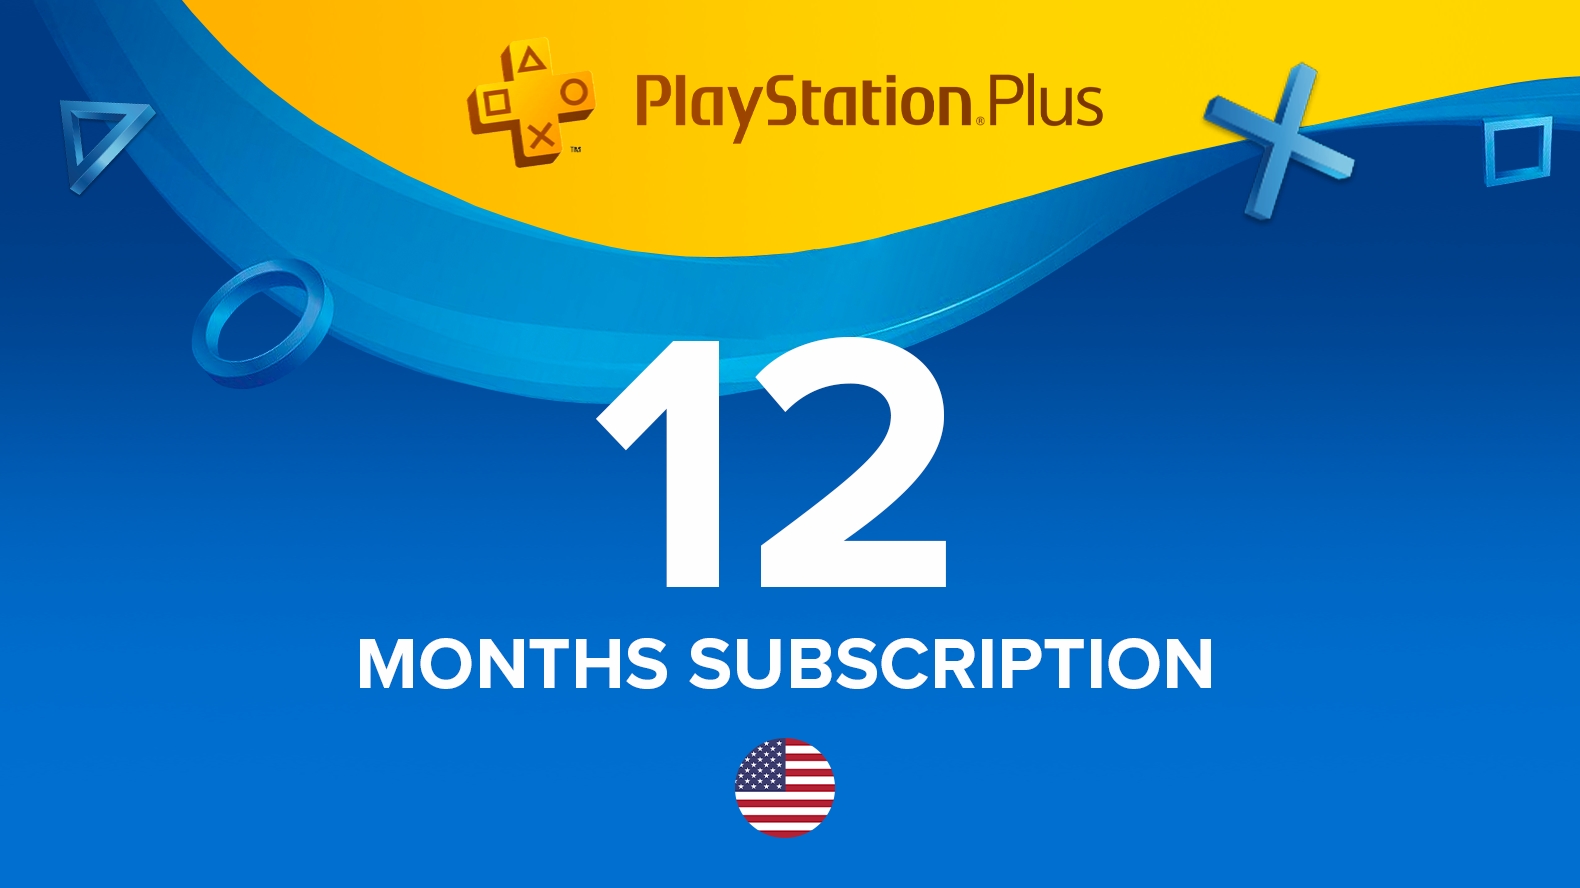 Preços do PS Plus de 12 meses aumentam